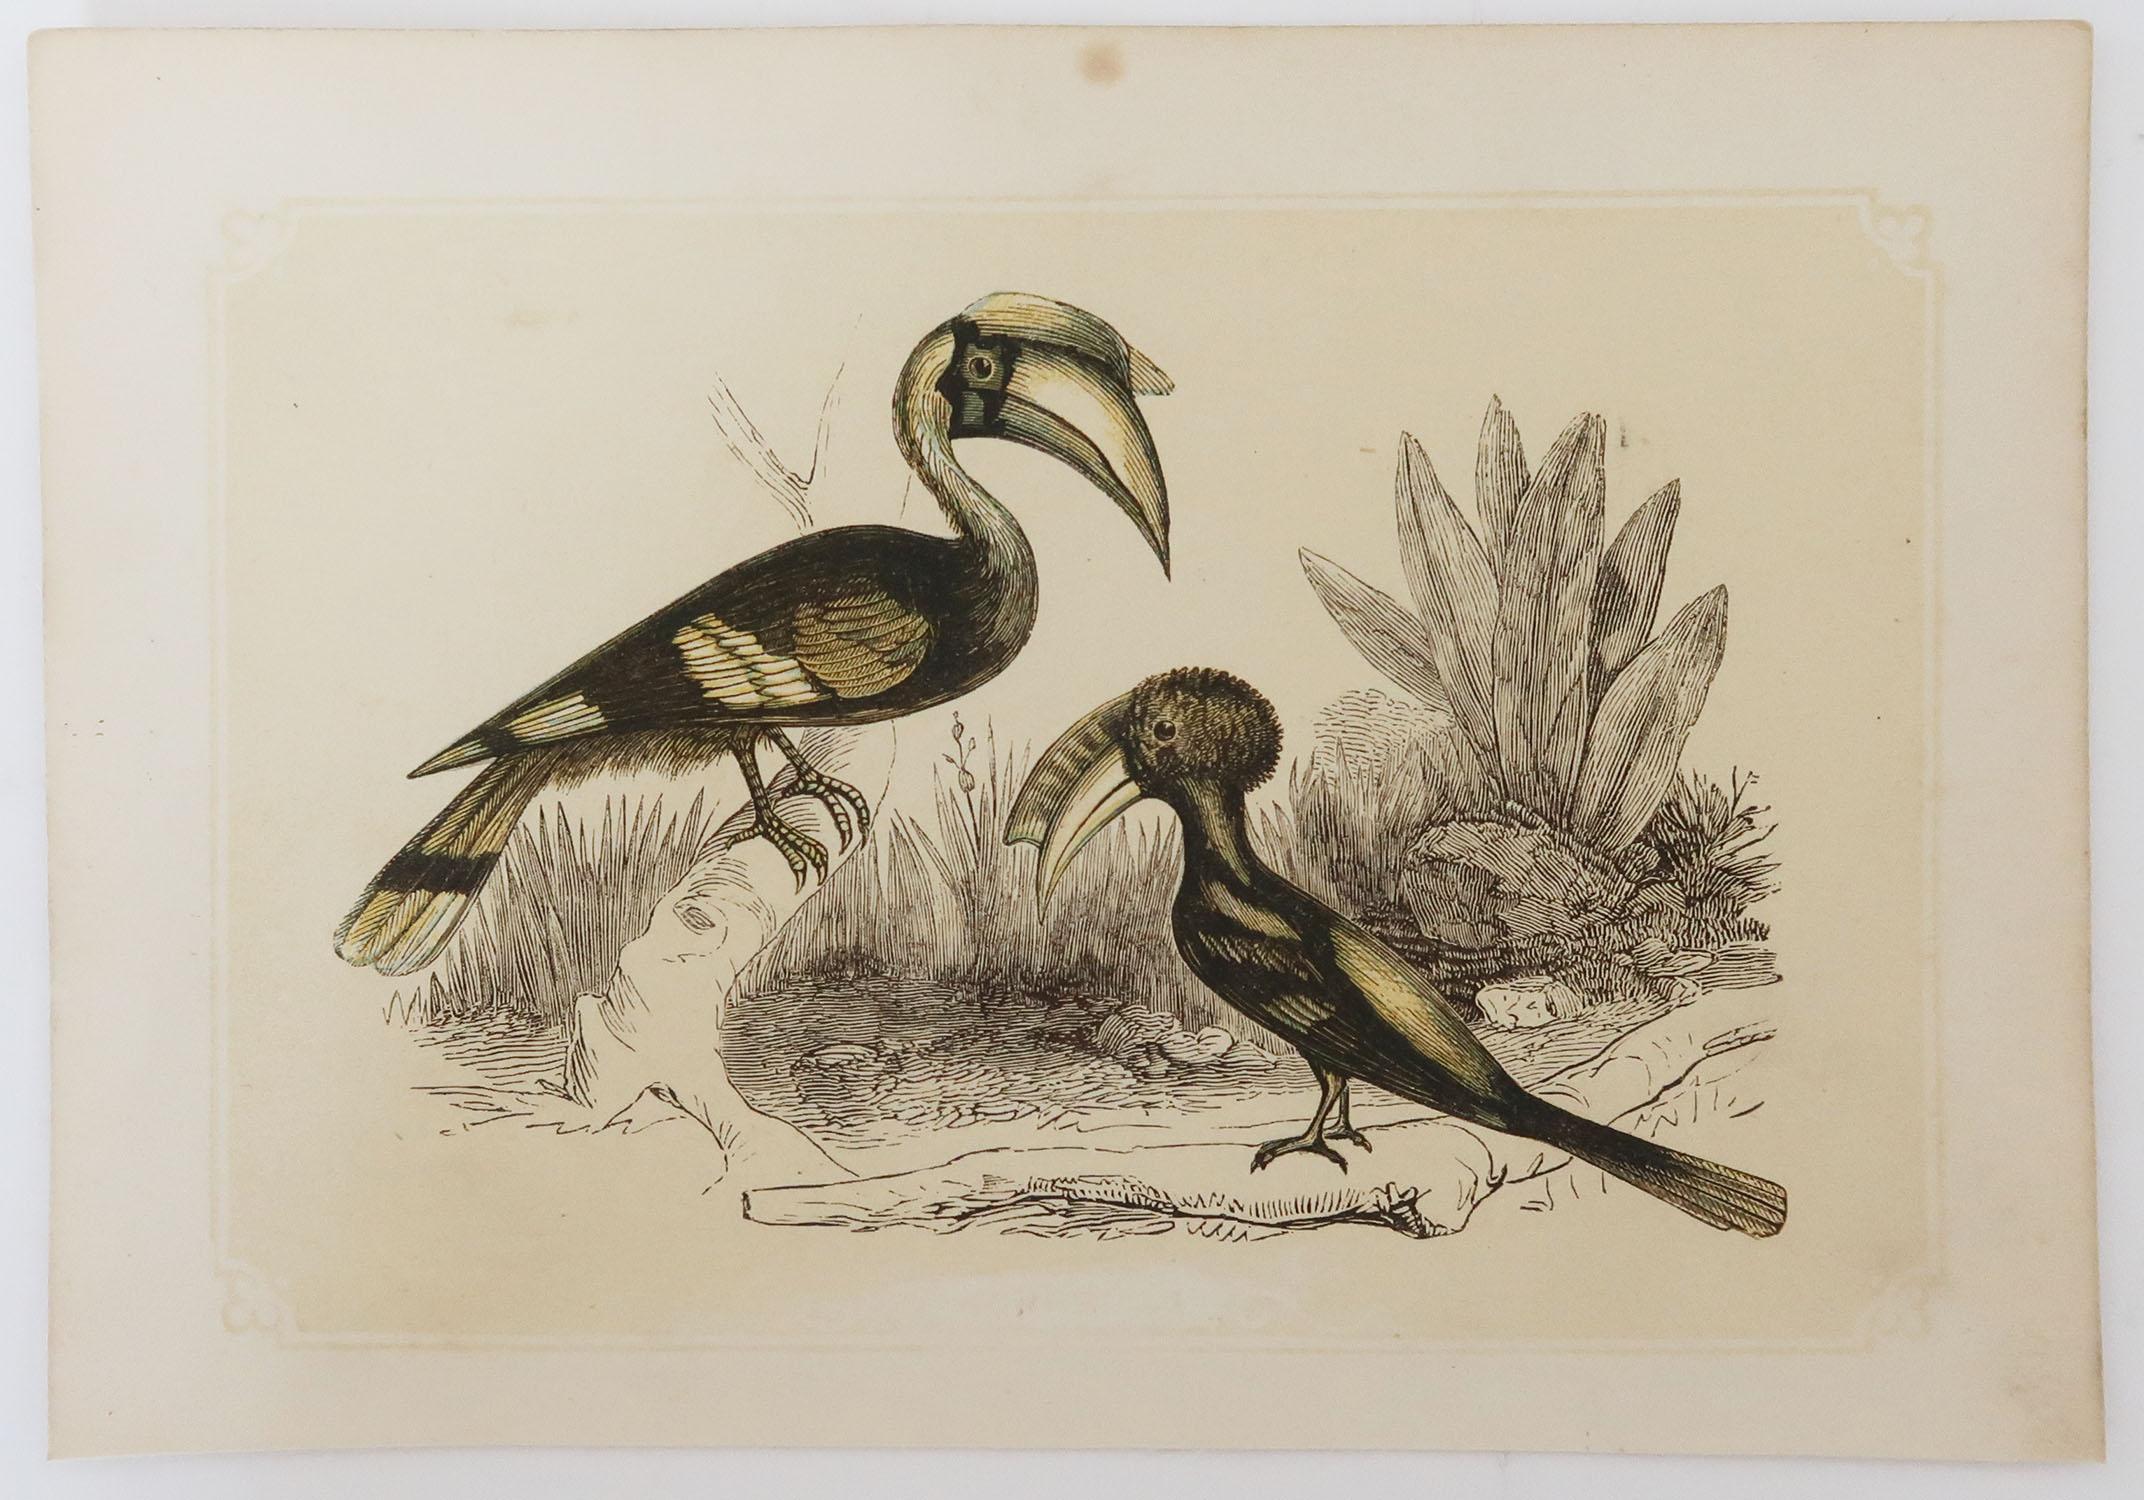 Folk Art Original Antique Bird Print, the Hornbill, Tallis, circa 1850